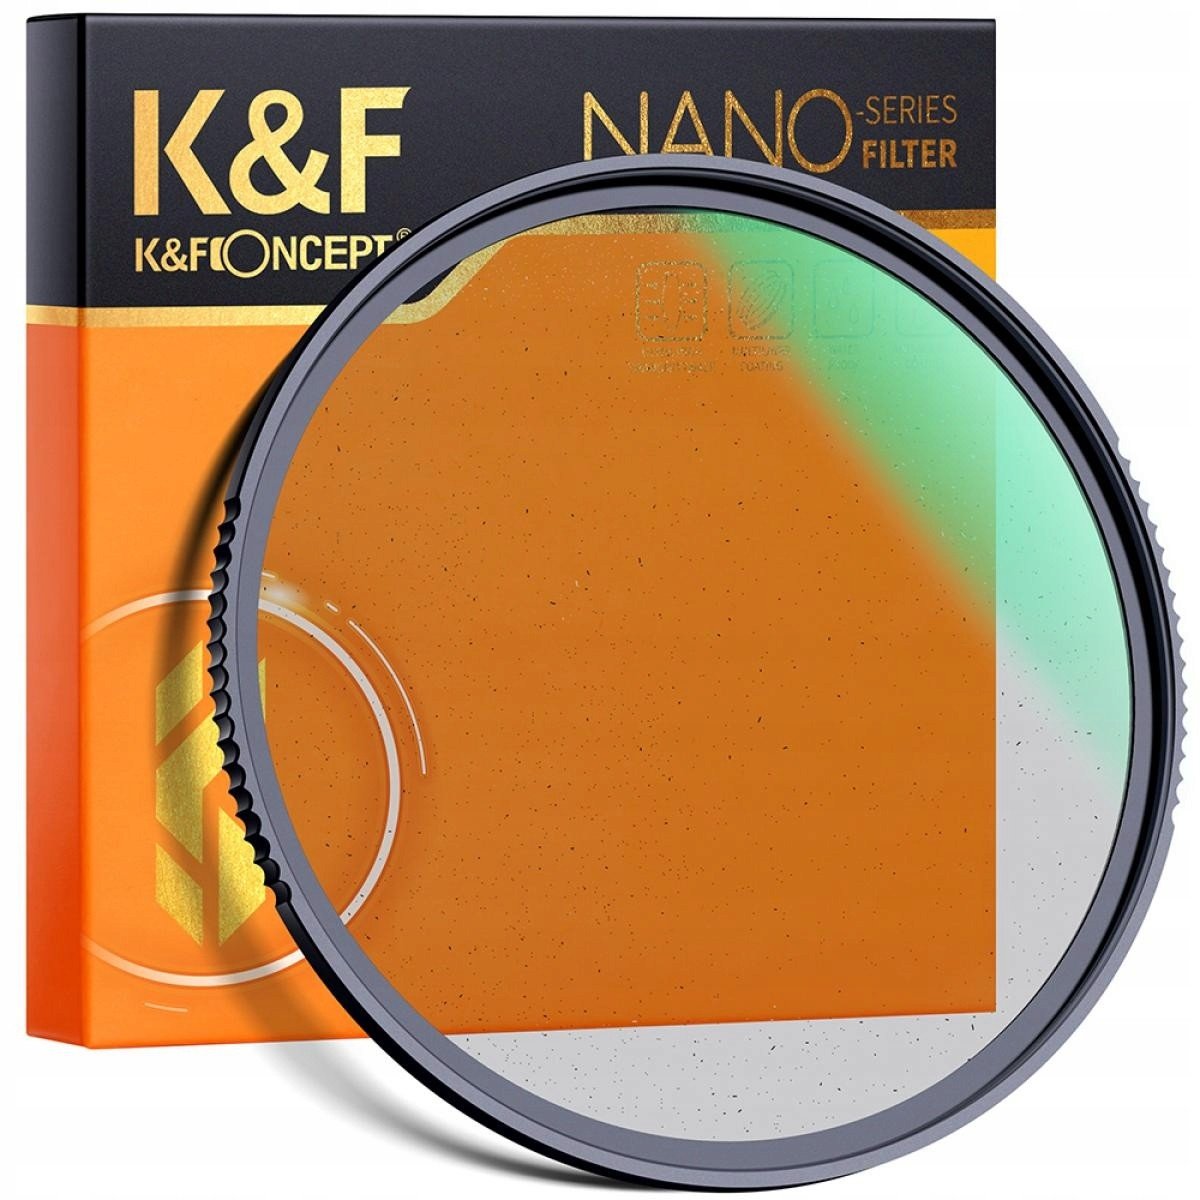 K&F FILTR dyfuzyjny Black Mist 1/4 NanoX 62mm